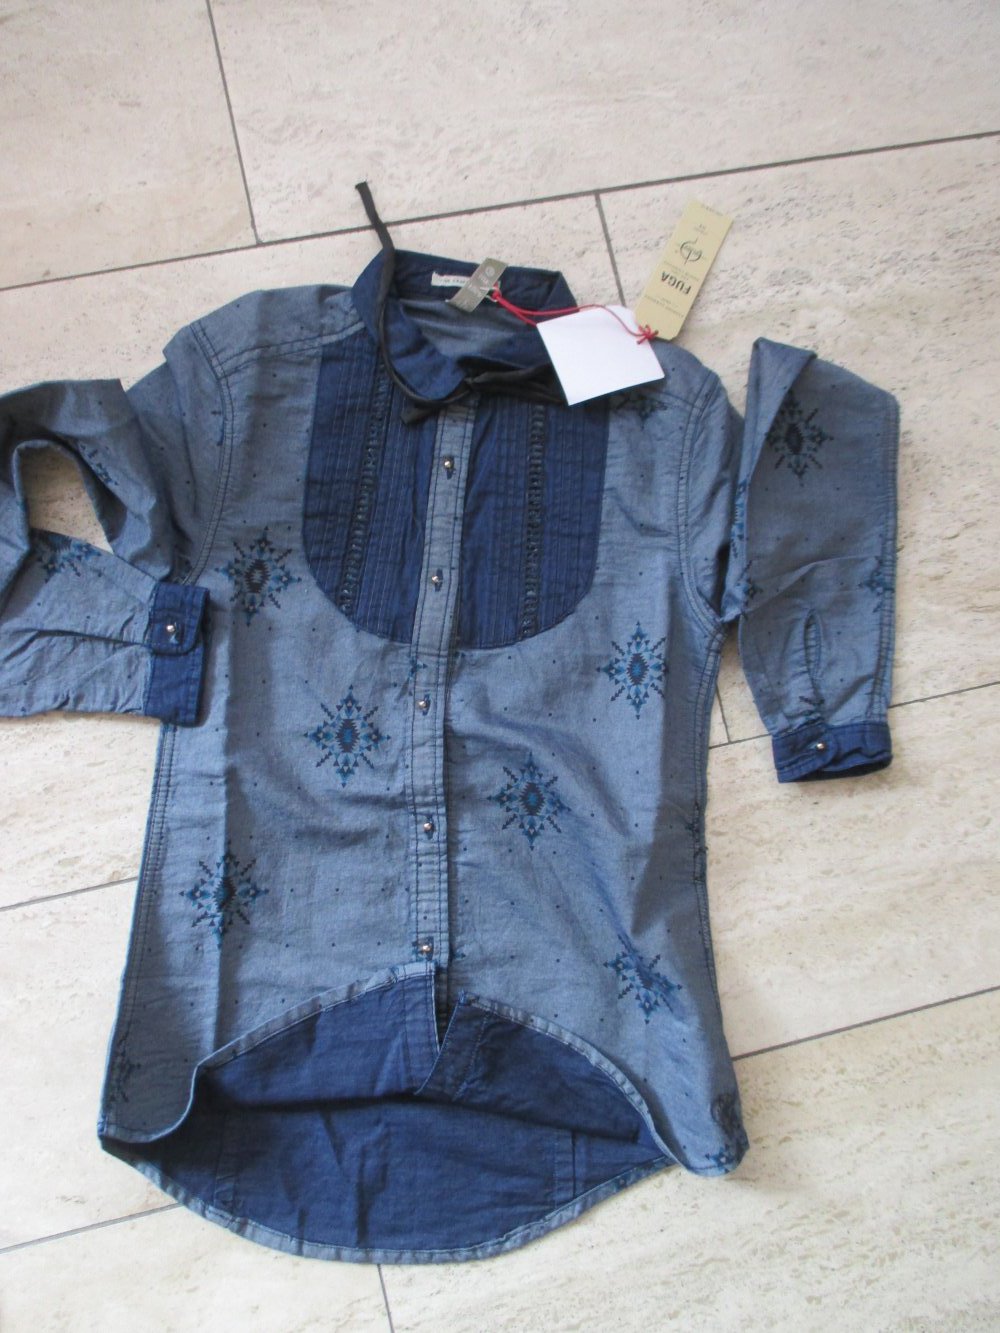 Fuga; Jeans- Indianer bluse, XS, neu mit Etikett, mit Biesen, abnehmbarer Schleife, goldfarbenen Knöpfen und folkloristischem Print